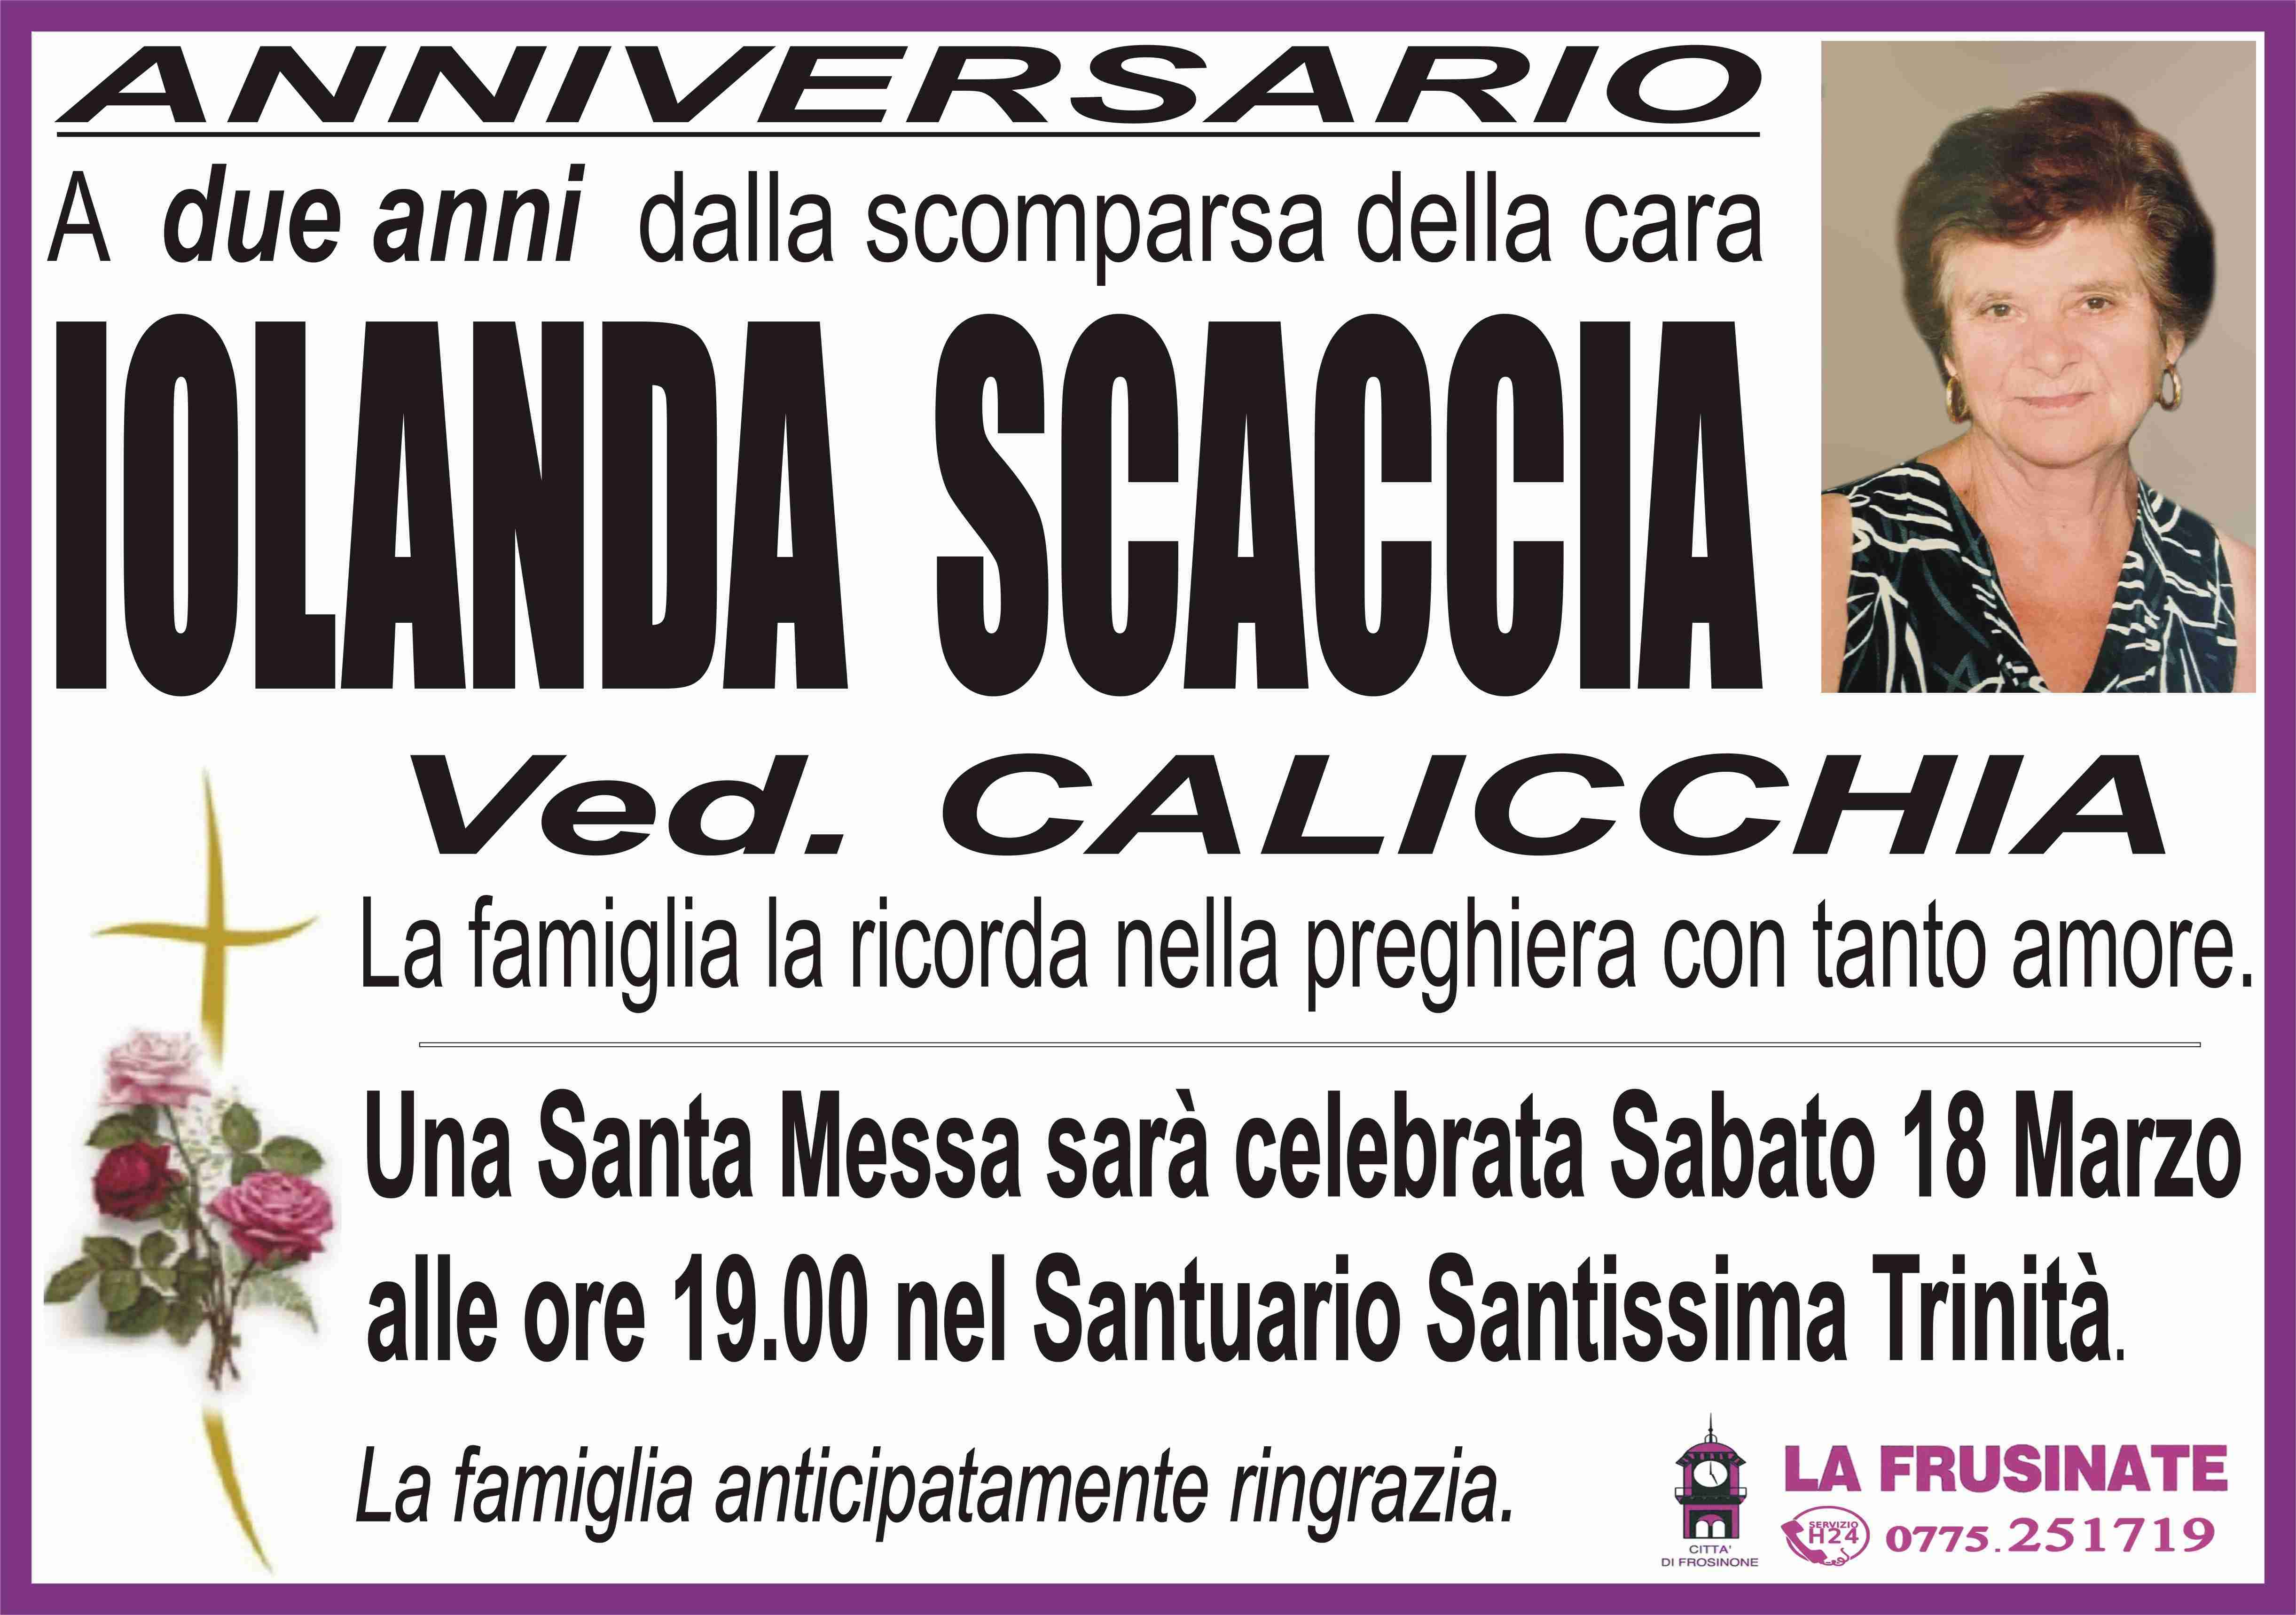 Iolanda Scaccia